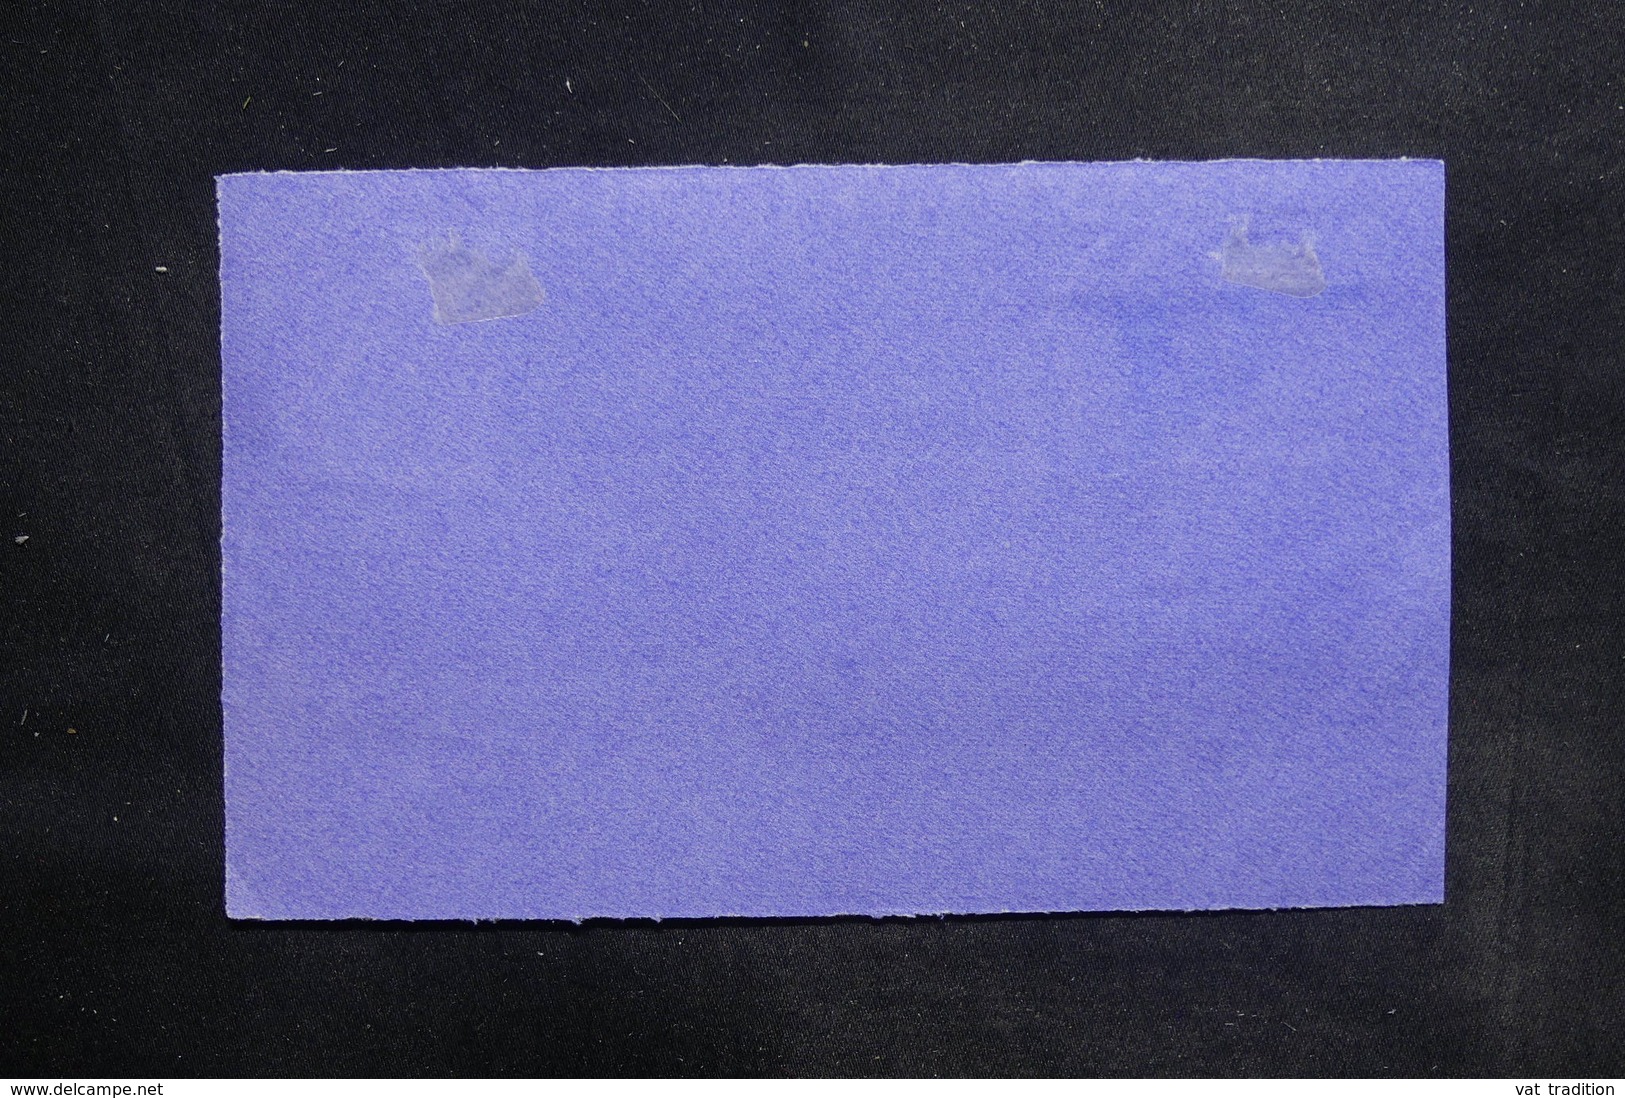 AUSTRALIE - Enveloppe ( Devant ) En Recommandé De Northbridge En 1926 Pour La France - L 36329 - Cartas & Documentos